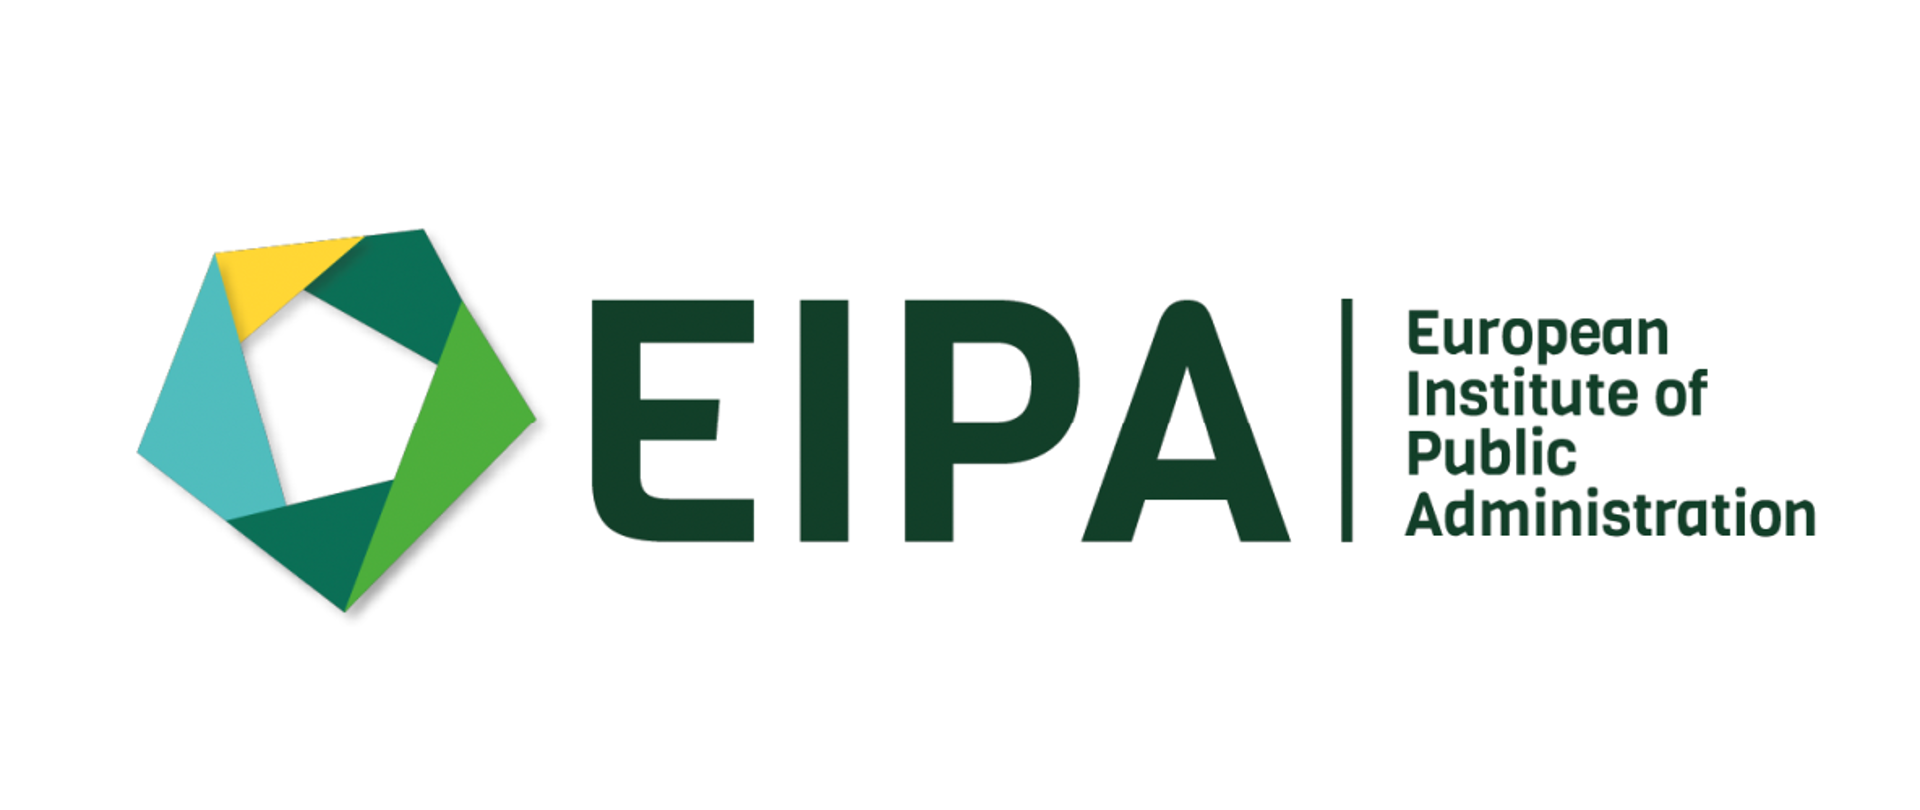 Na obrazku znajduje się napis EIPA oraz wytłumaczenie tego skrótu: European Institute of Public Administration. Po lewo od napisu znajduje się pięciokąt w barwach zielono-żółty, z białym środkiem. 